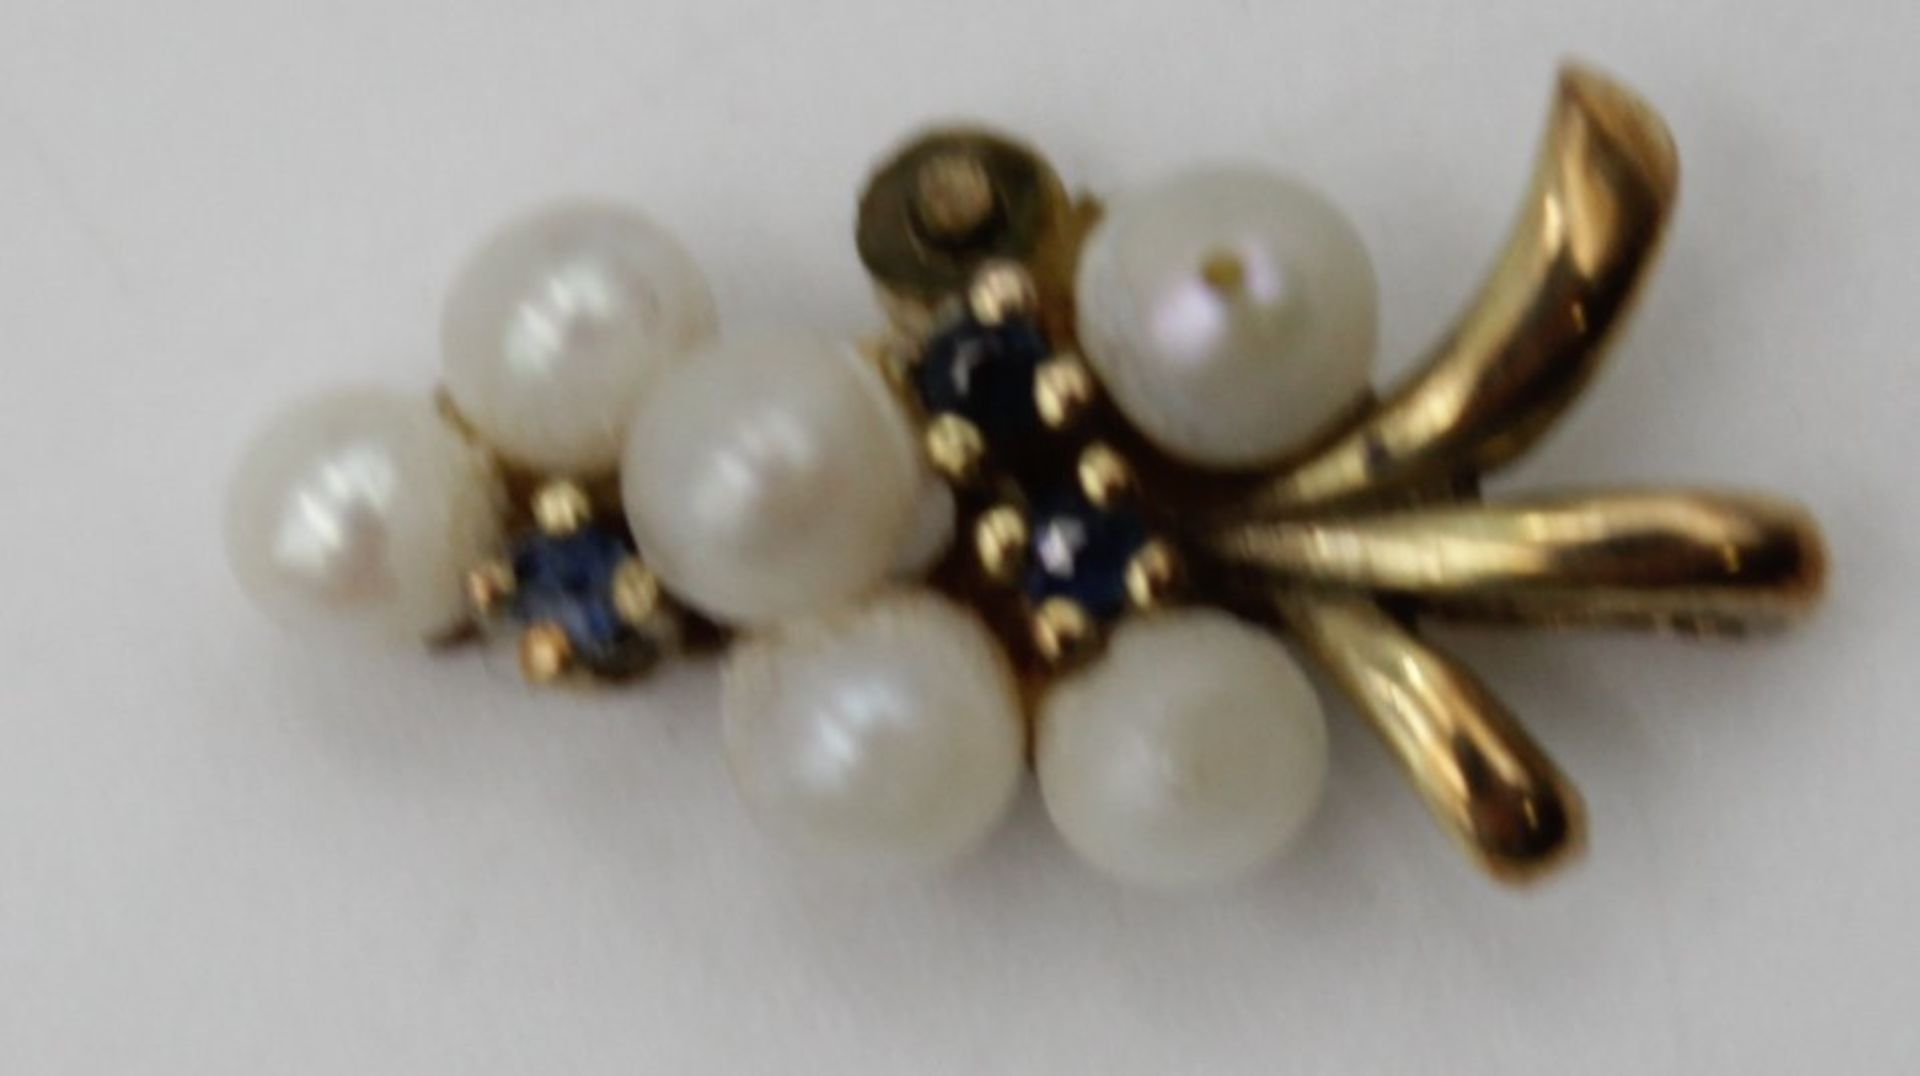 Anhänger Gold 333 mit Perlen Besatz u. Salire , eine Perle fehlt , L 1,7 cm zusammen 1,1gr.